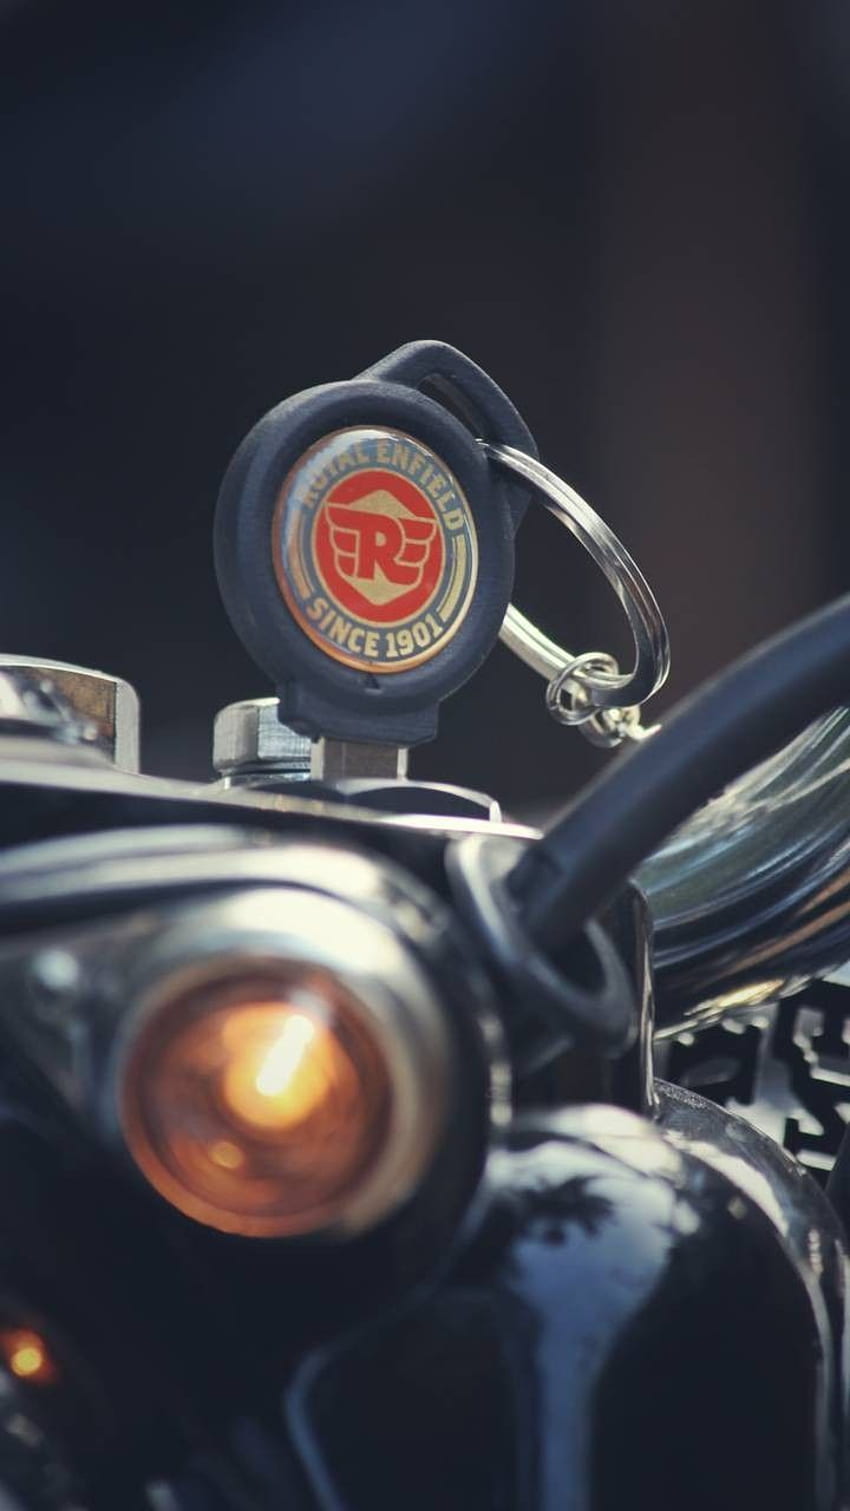 私のフィーバーバイク。 .. クリシュナ。 弾丸バイク ロイヤル、ロイヤル エンフィールド ロゴ HD電話の壁紙